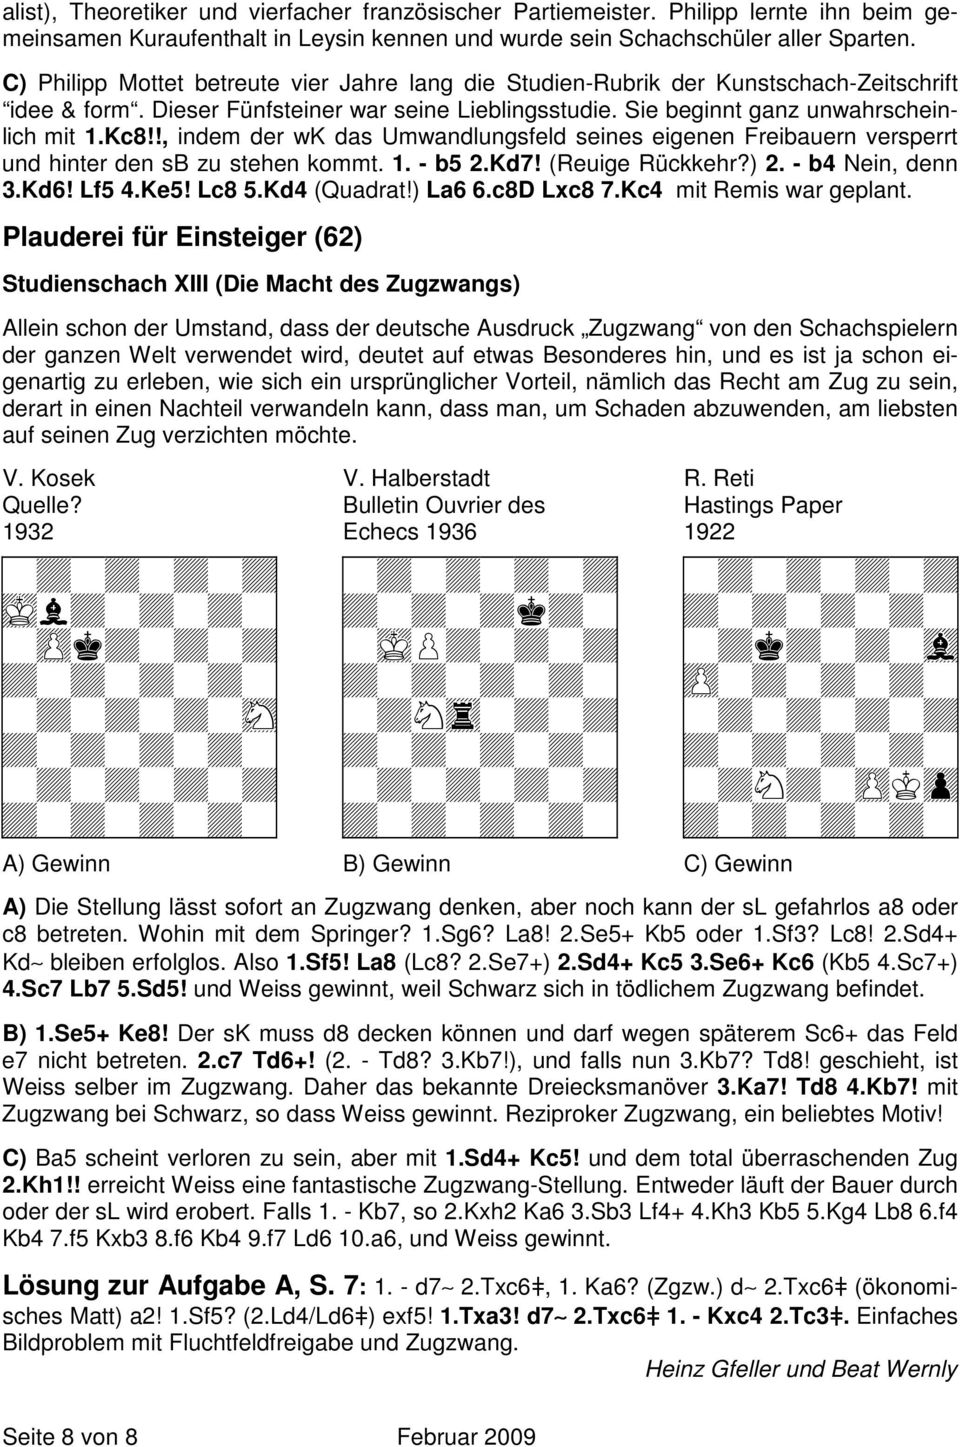 !, indem der wk das Umwandlungsfeld seines eigenen Freibauern versperrt und hinter den sb zu stehen kommt. 1. - b5 2.Kd7! (Reuige Rückkehr?) 2. - b4 Nein, denn 3.Kd6! Lf5 4.Ke5! Lc8 5.Kd4 (Quadrat!